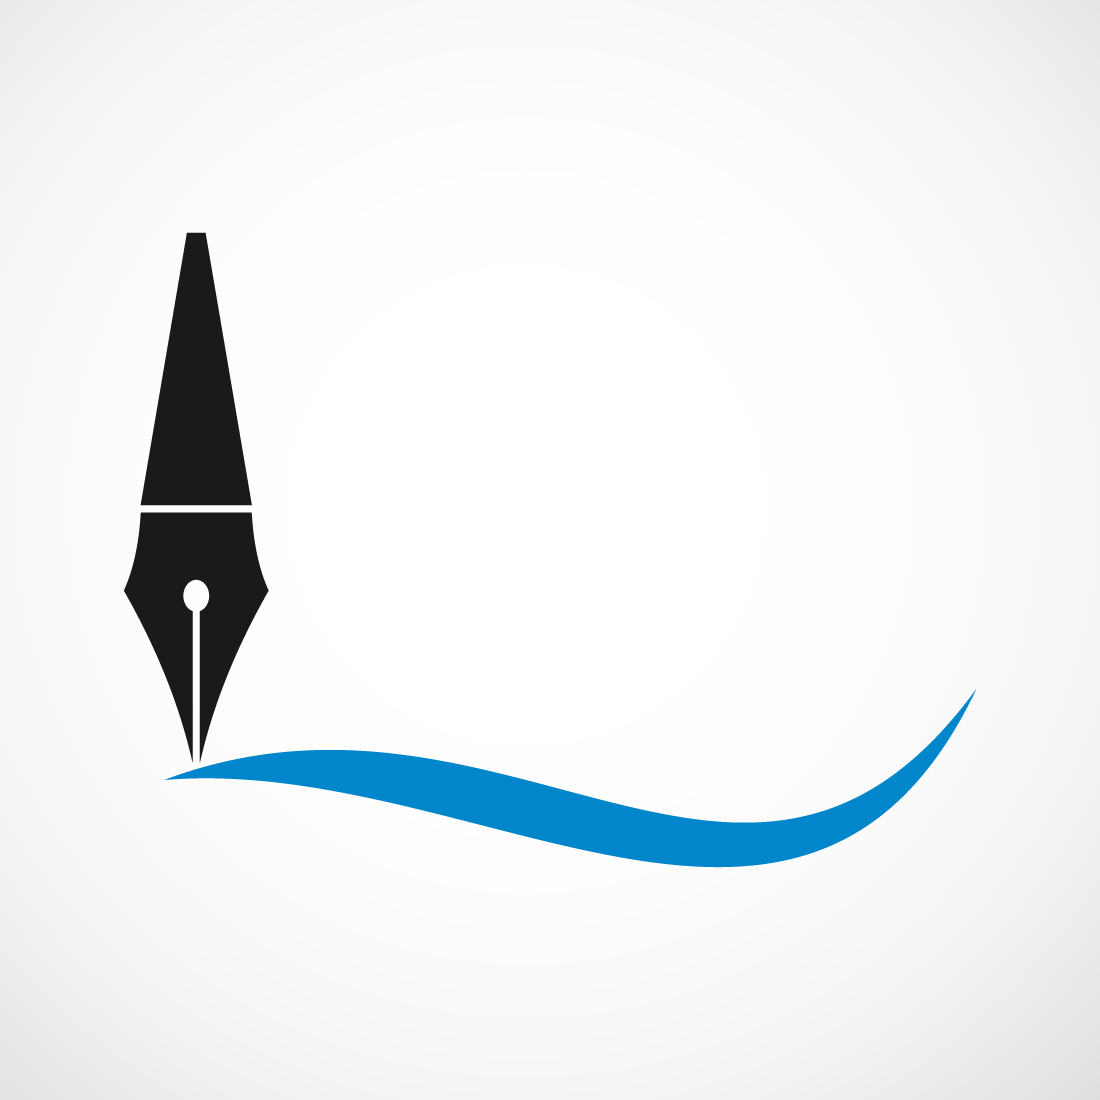 Fountain writing pen logo design, Vector design concept preview image.